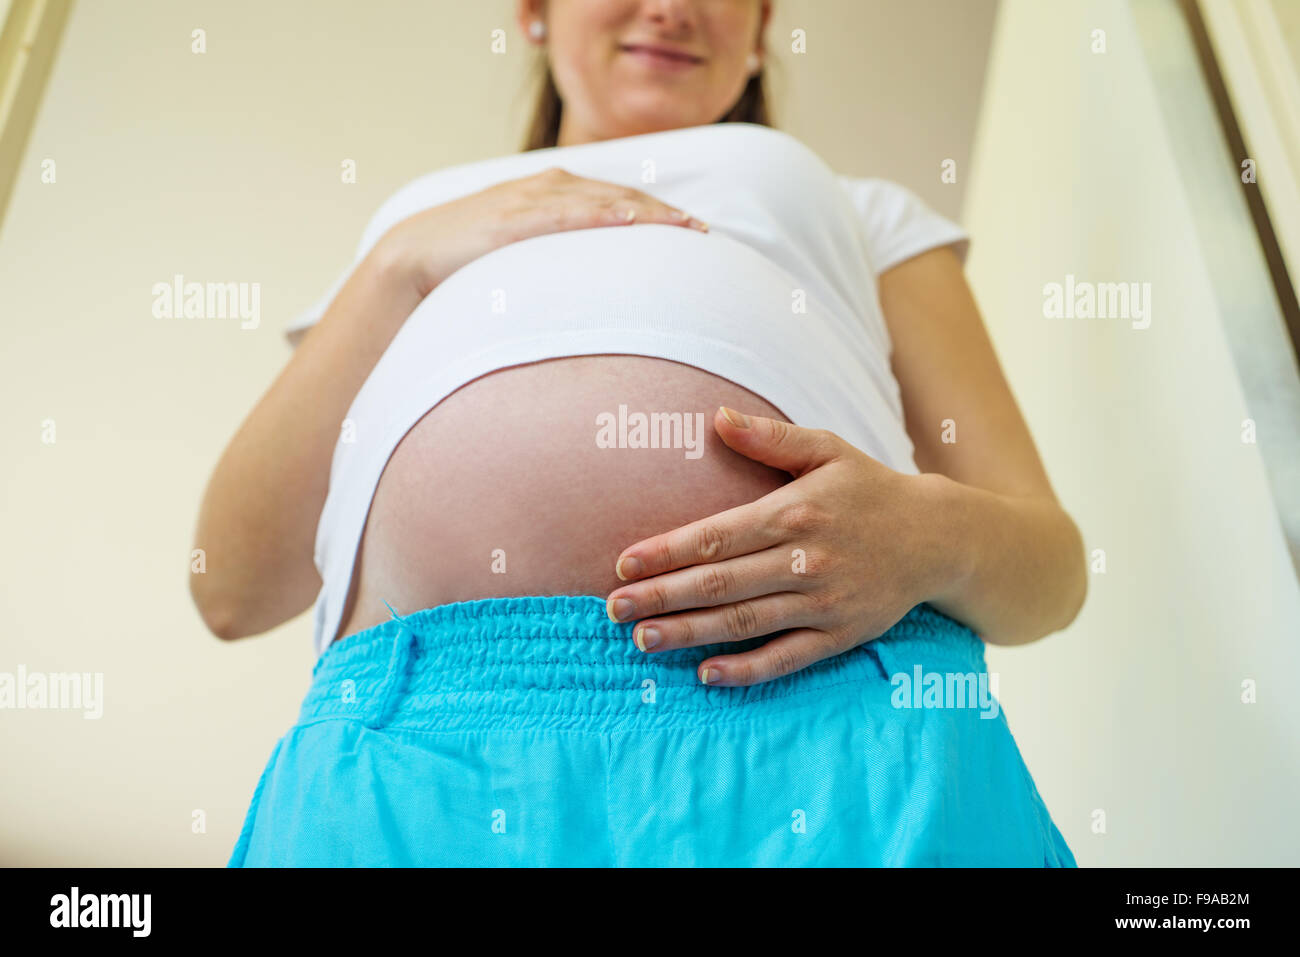 Close-up of méconnaissable femme enceinte avec les mains sur le ventre Banque D'Images